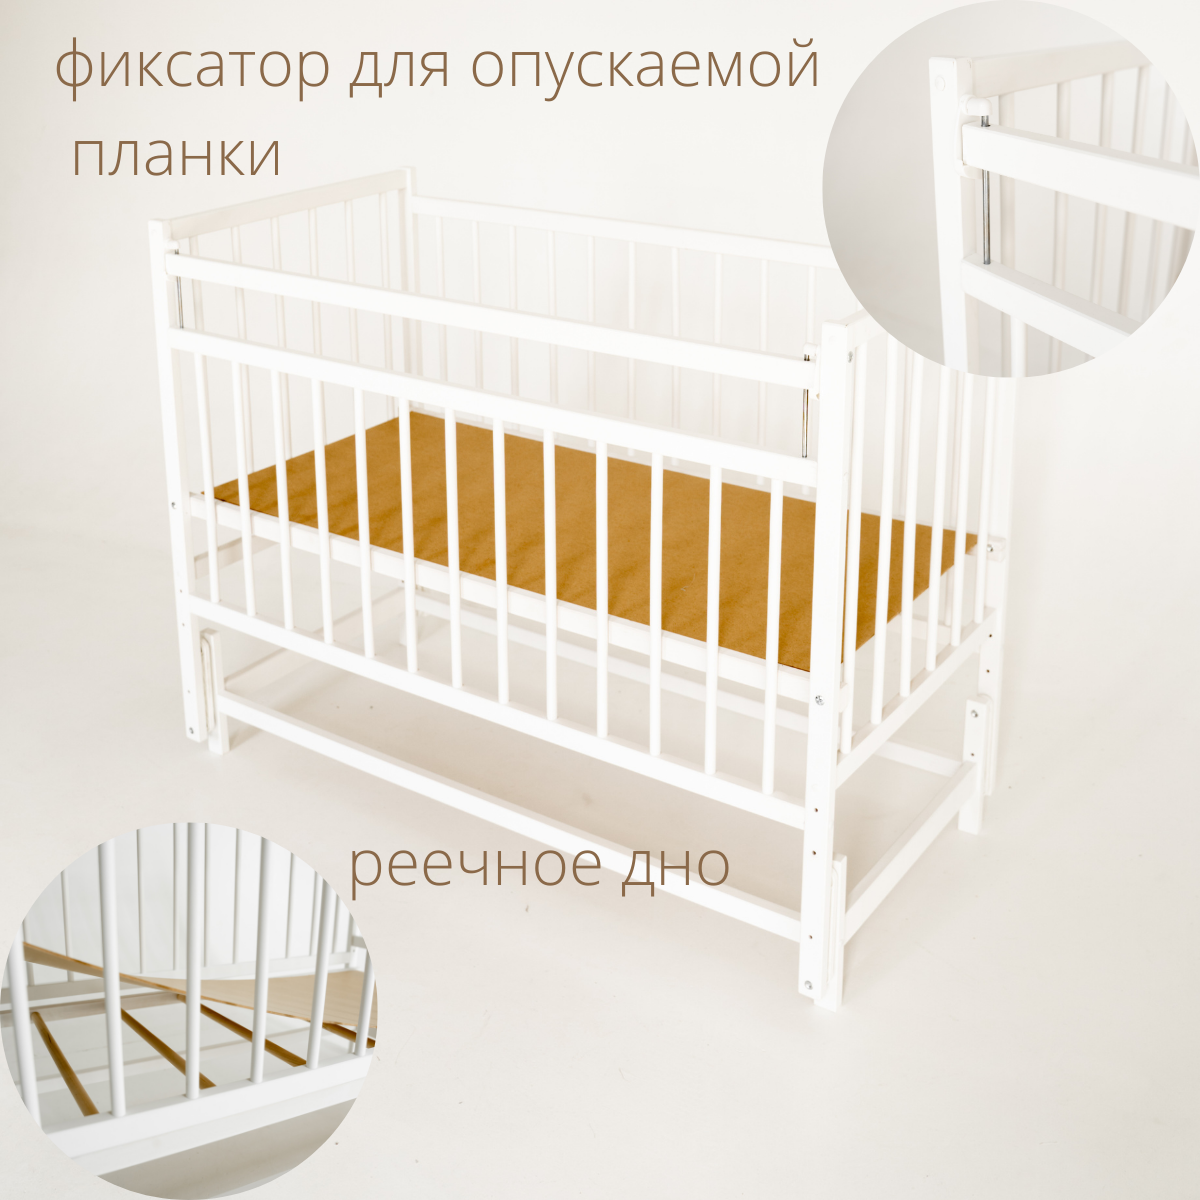 Детская кроватка и матрас для новорожденных 120 60 Промтекс с продольным маятником, цвет белый